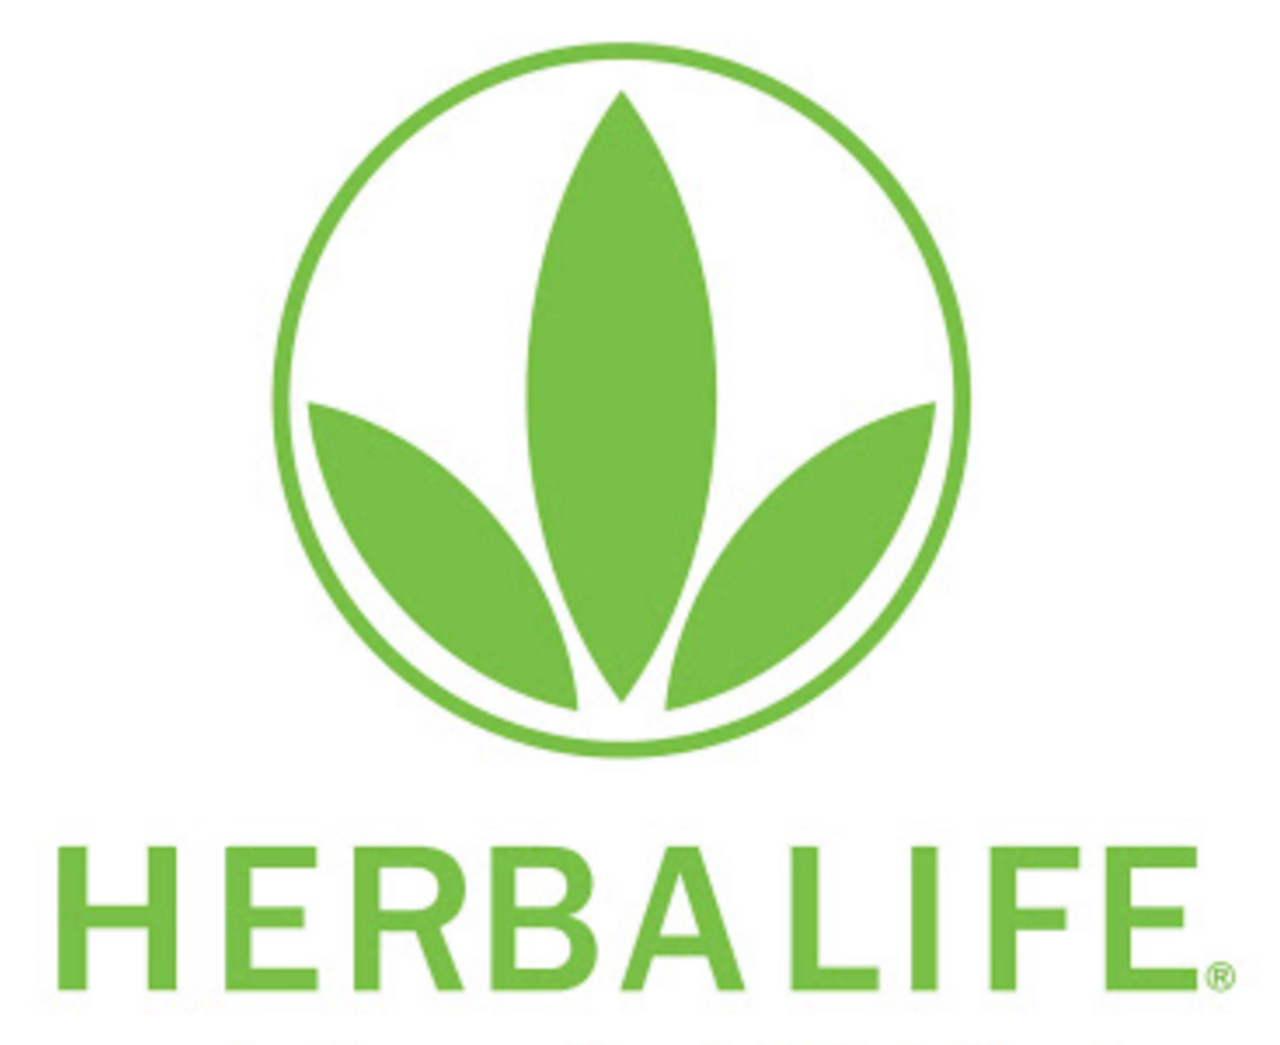 Order Herbalife Online